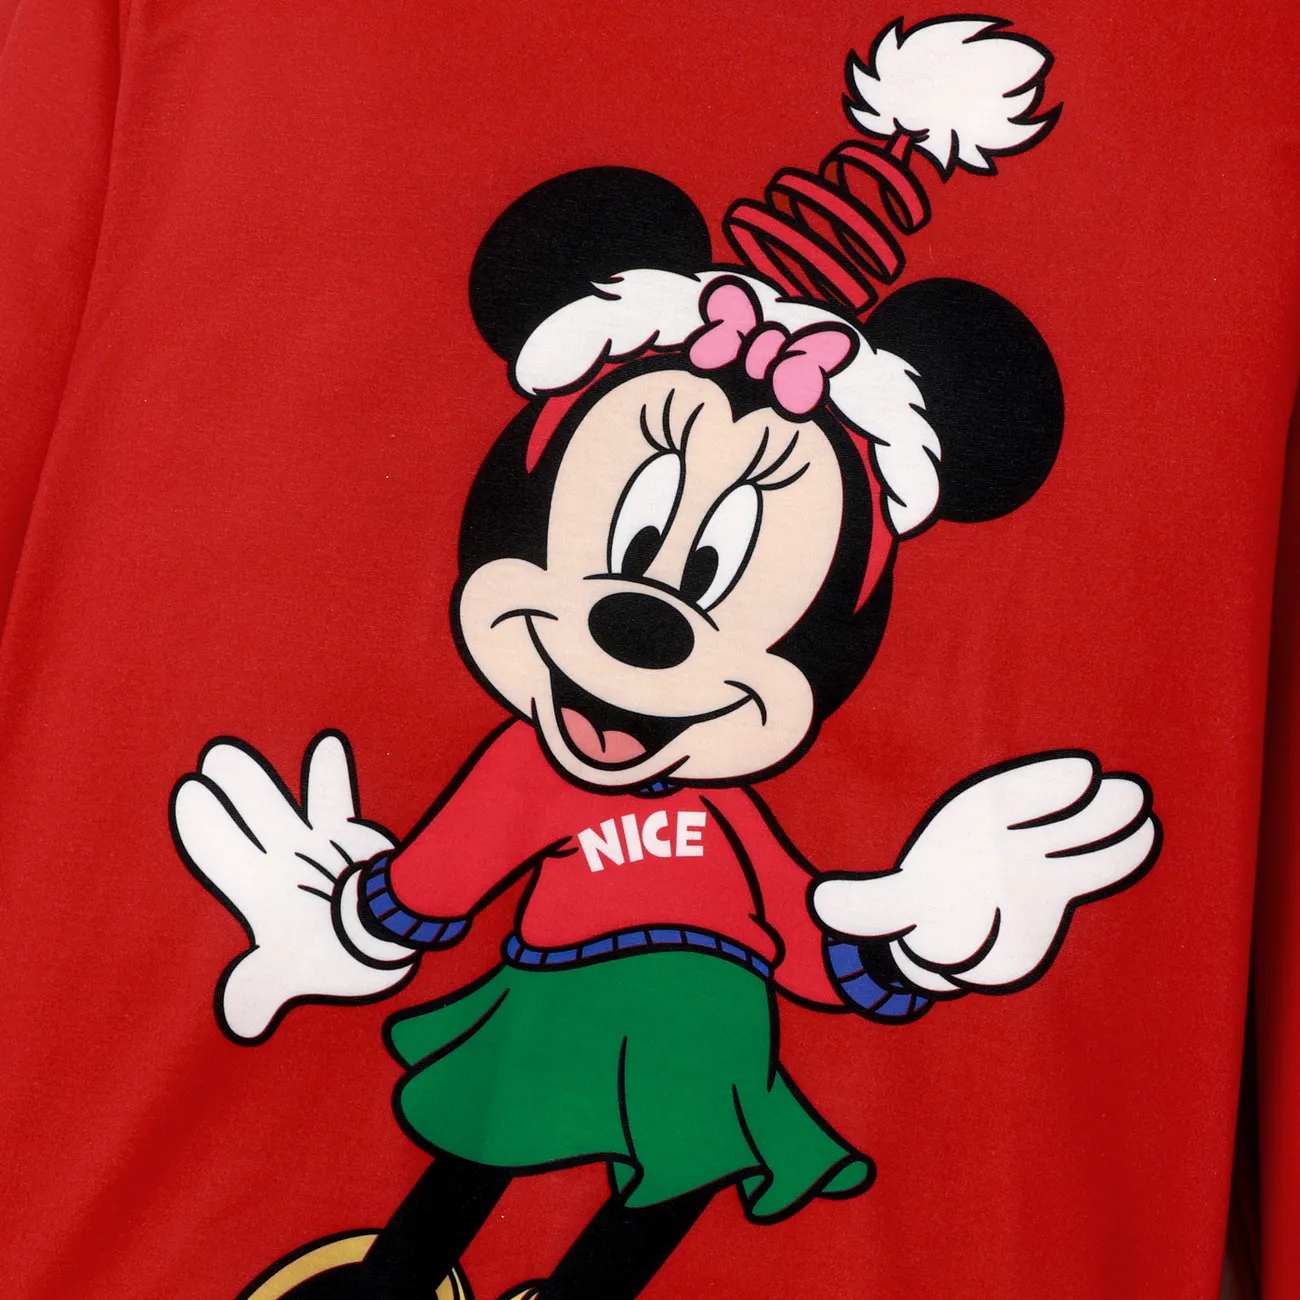 Disney Mickey and Friends بلايزر إطلالة العائلة للجنسين طوق الجولة كم طويل شخصيات الكريسماس أحمر big image 1